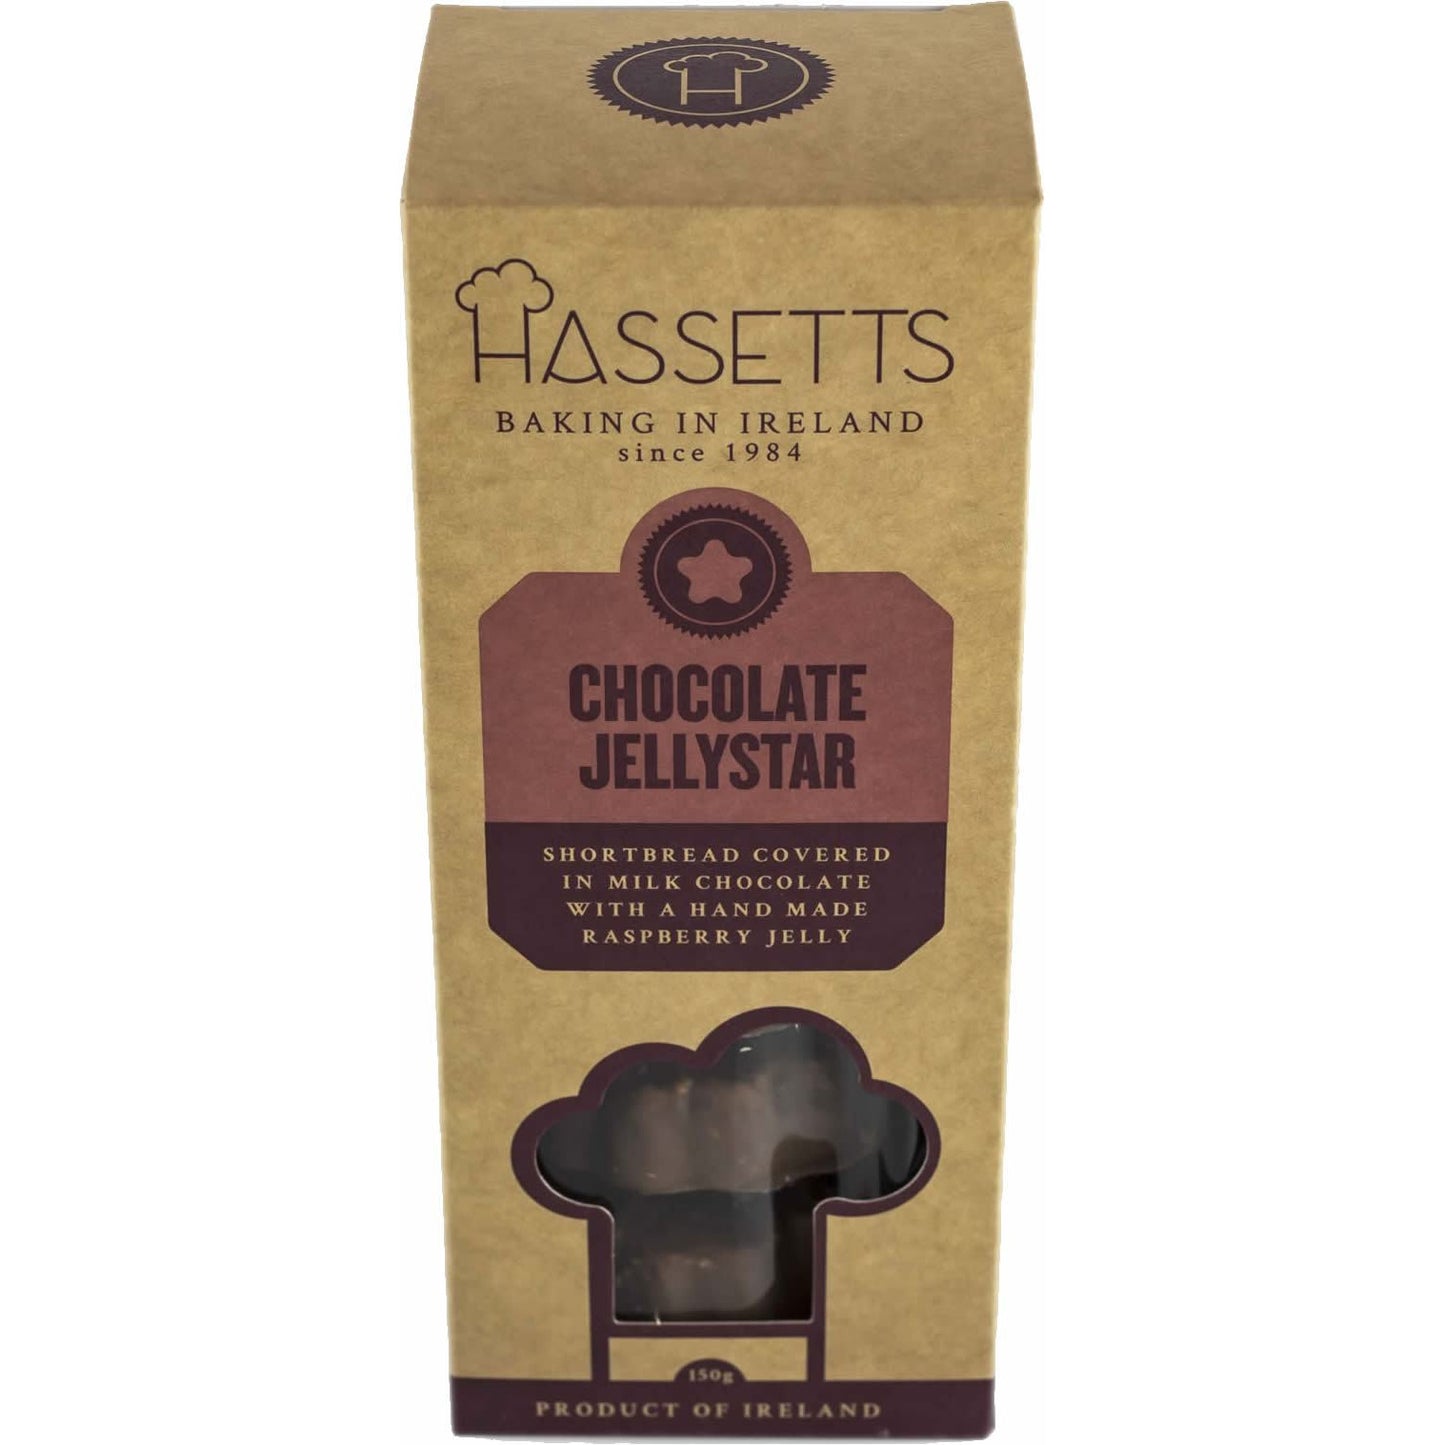 Hassetts Chocolate Jellystar Cookies-Irish Cookies-Irish Cookies Delivered-Irish Cookies Gift